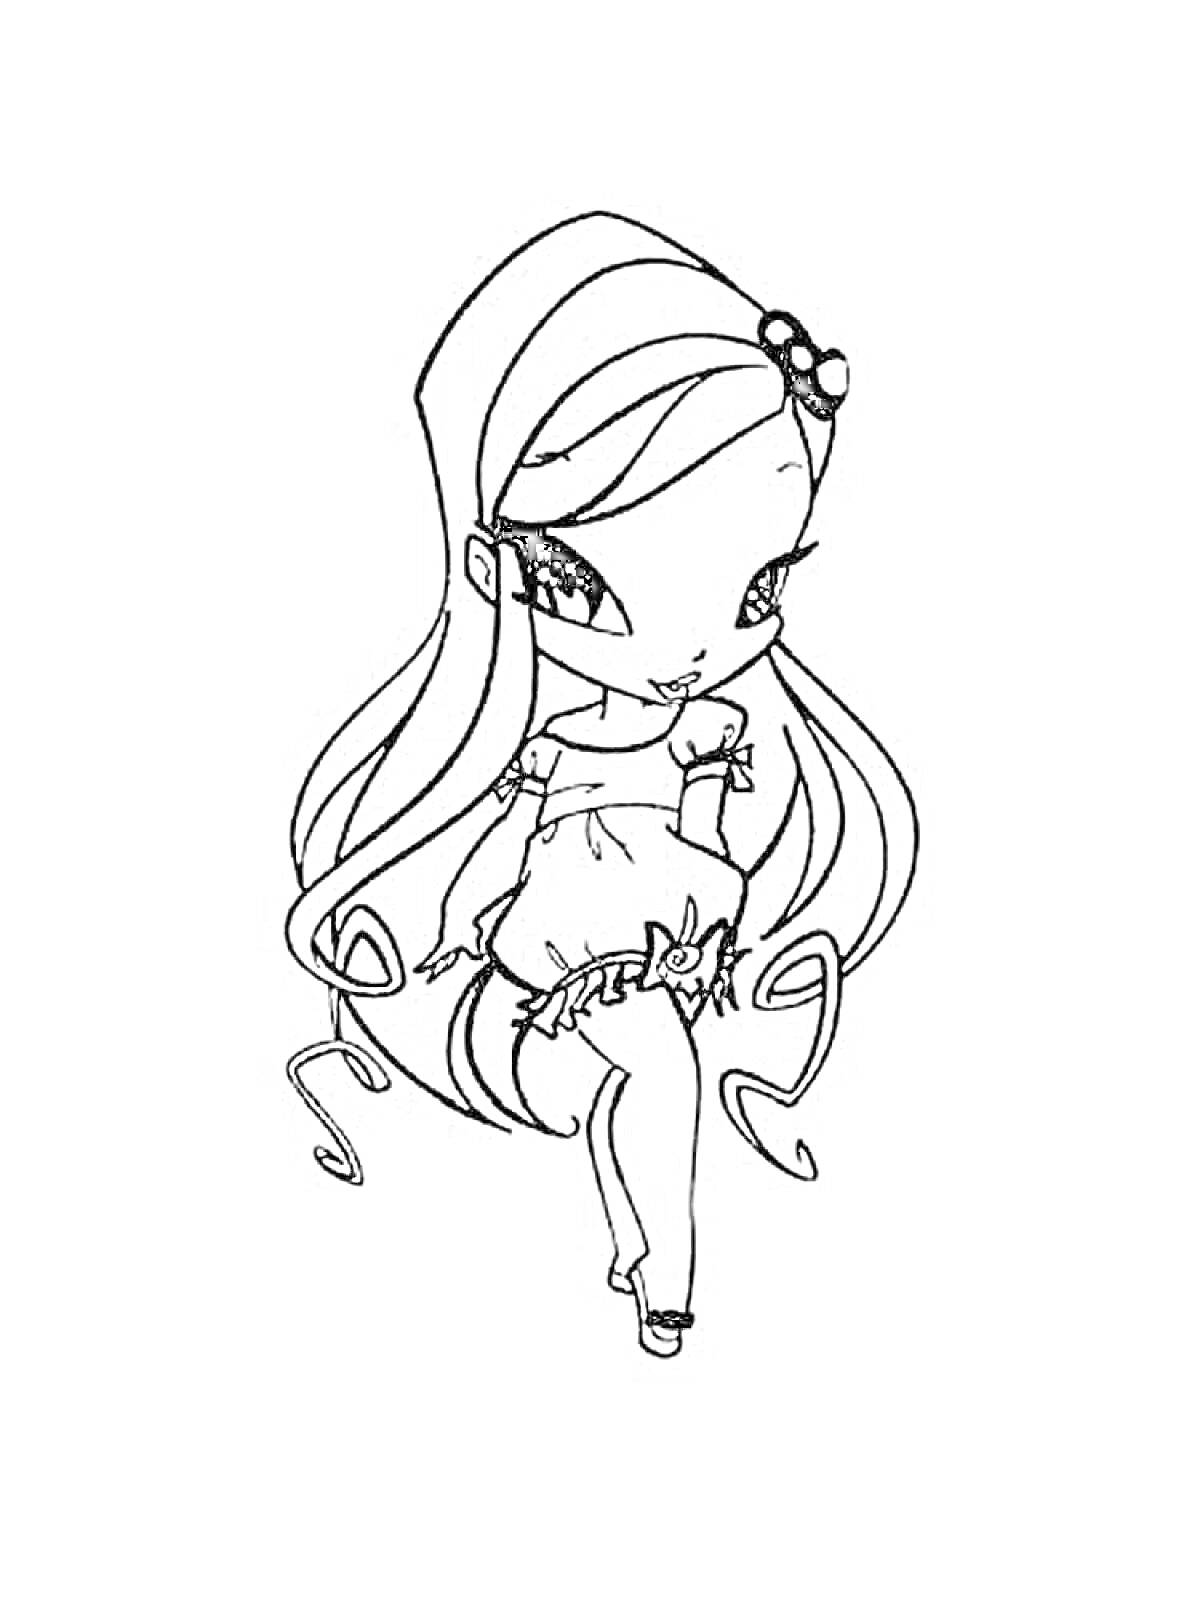 Раскраска Пикси с длинными волосами и бантом на голове, в платье и туфлях